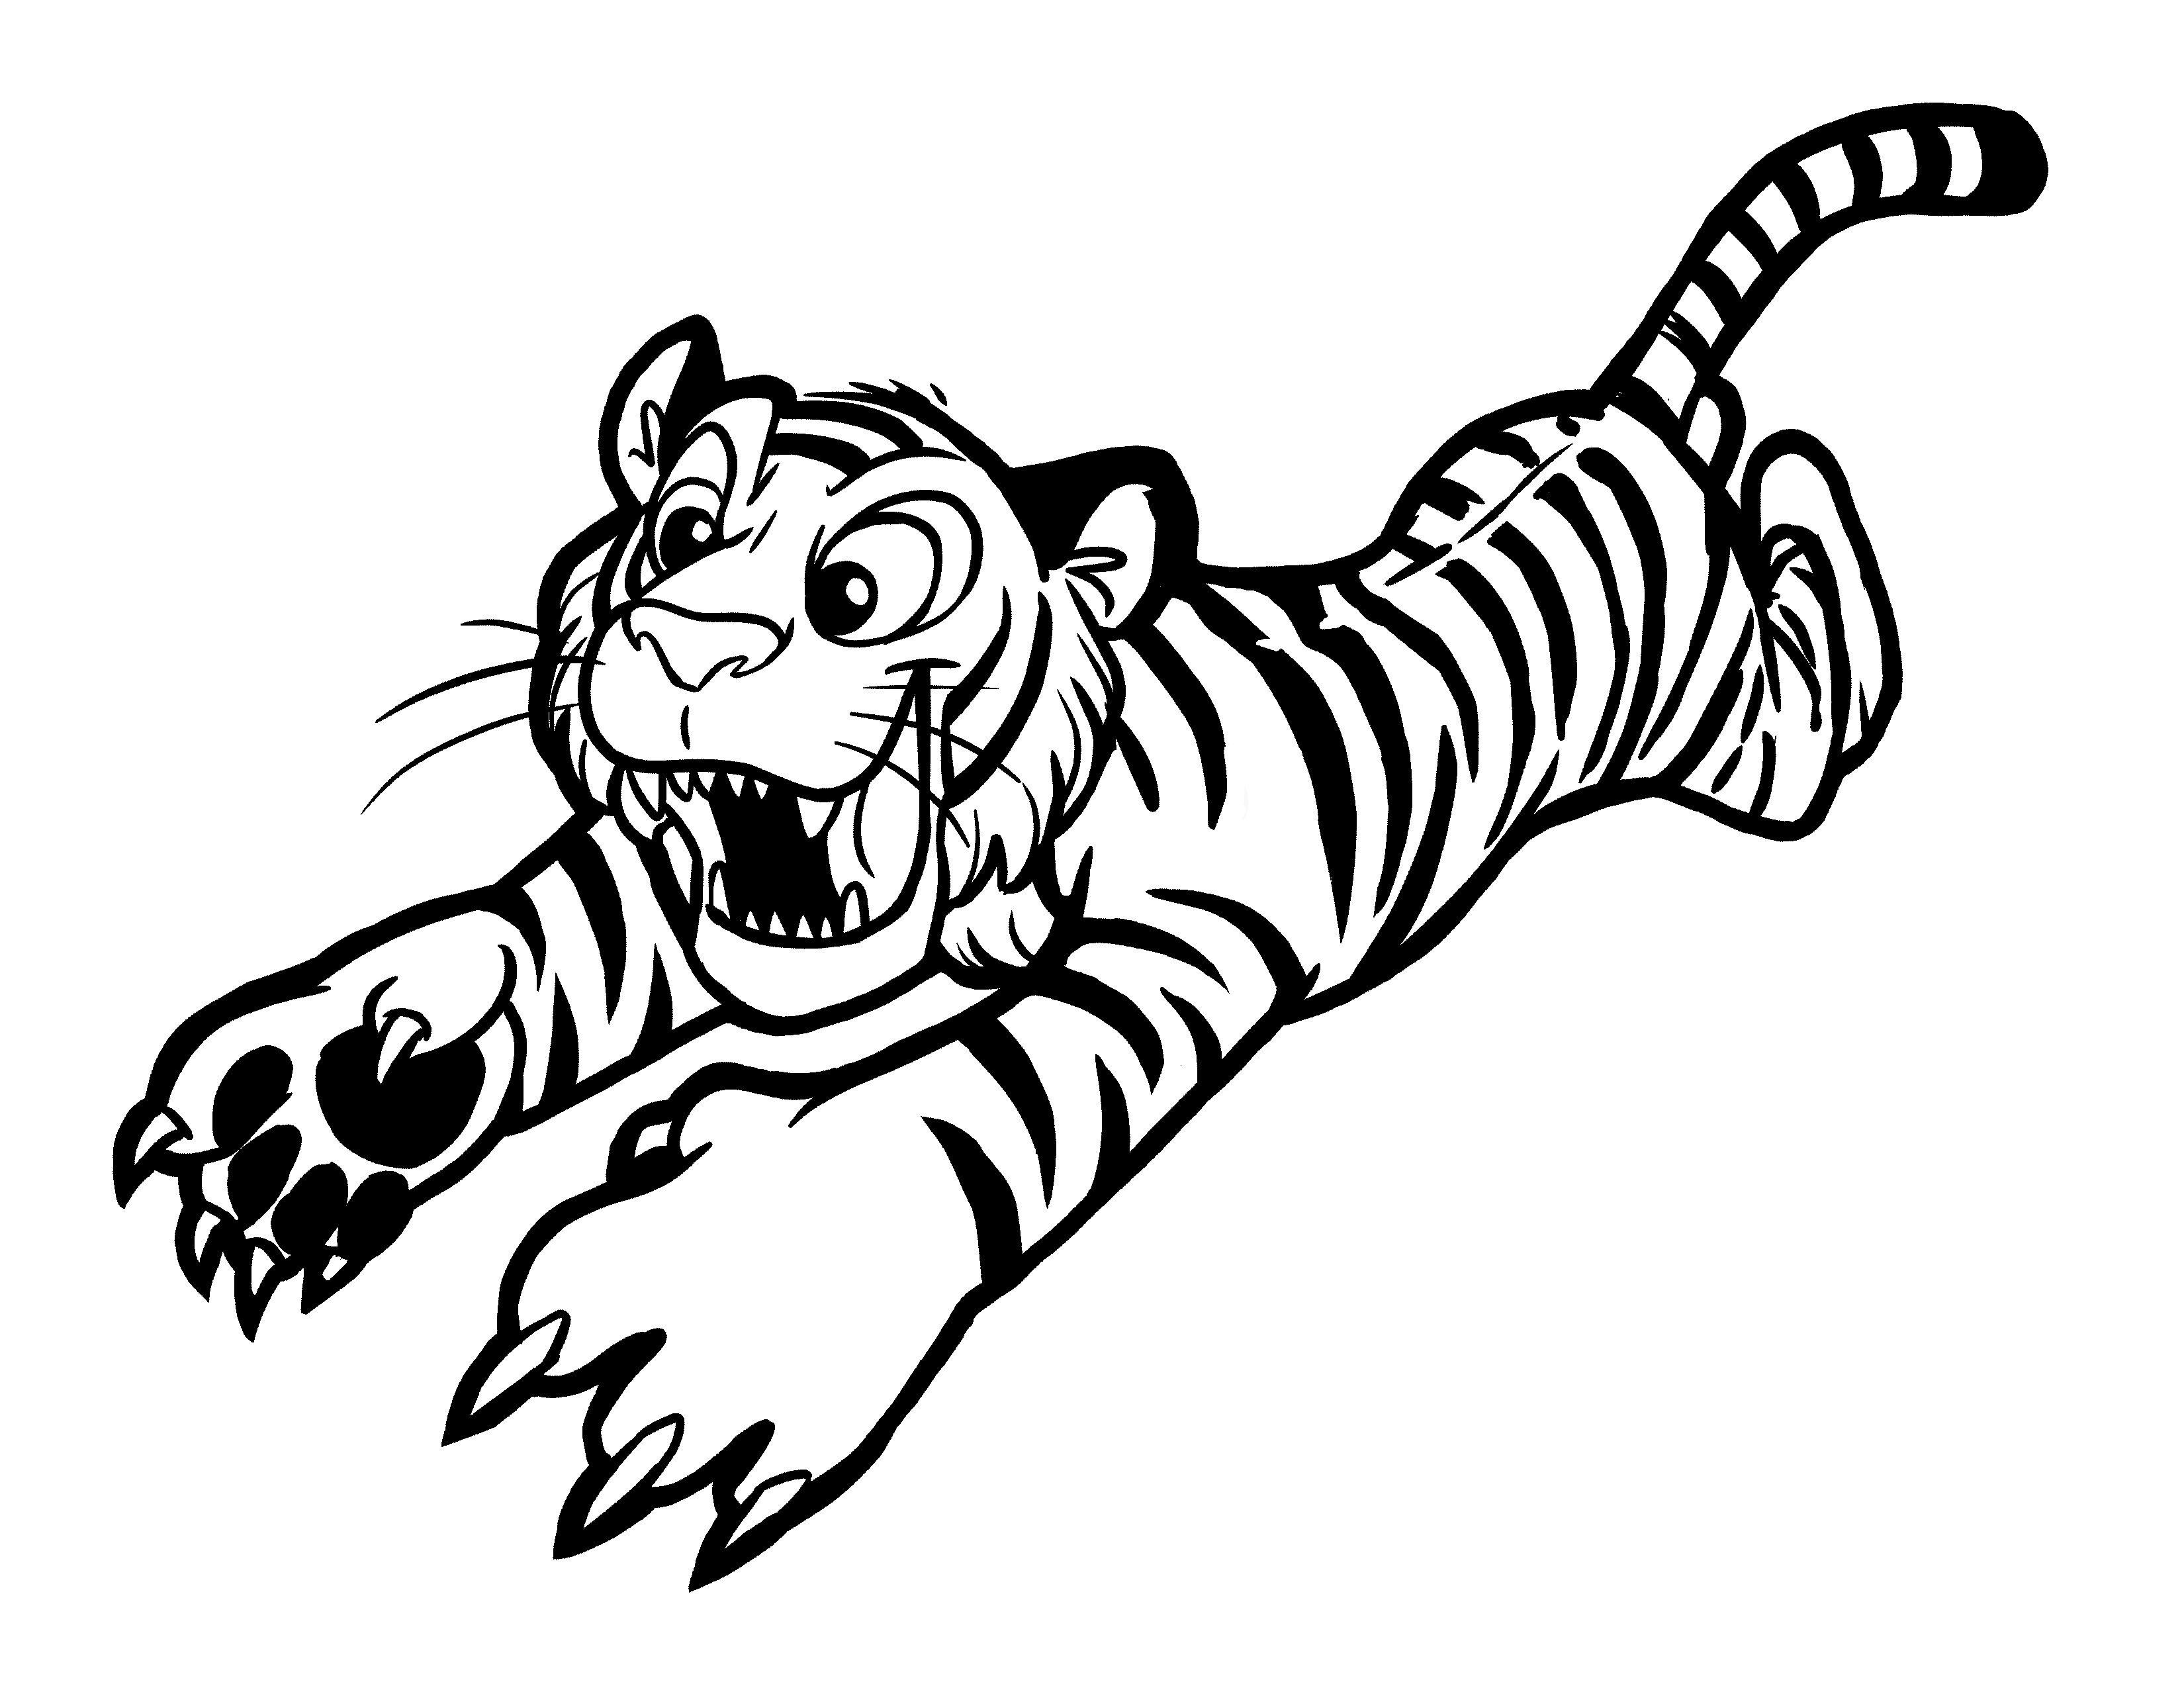 Trang tô màu của con hổ đang đến gần